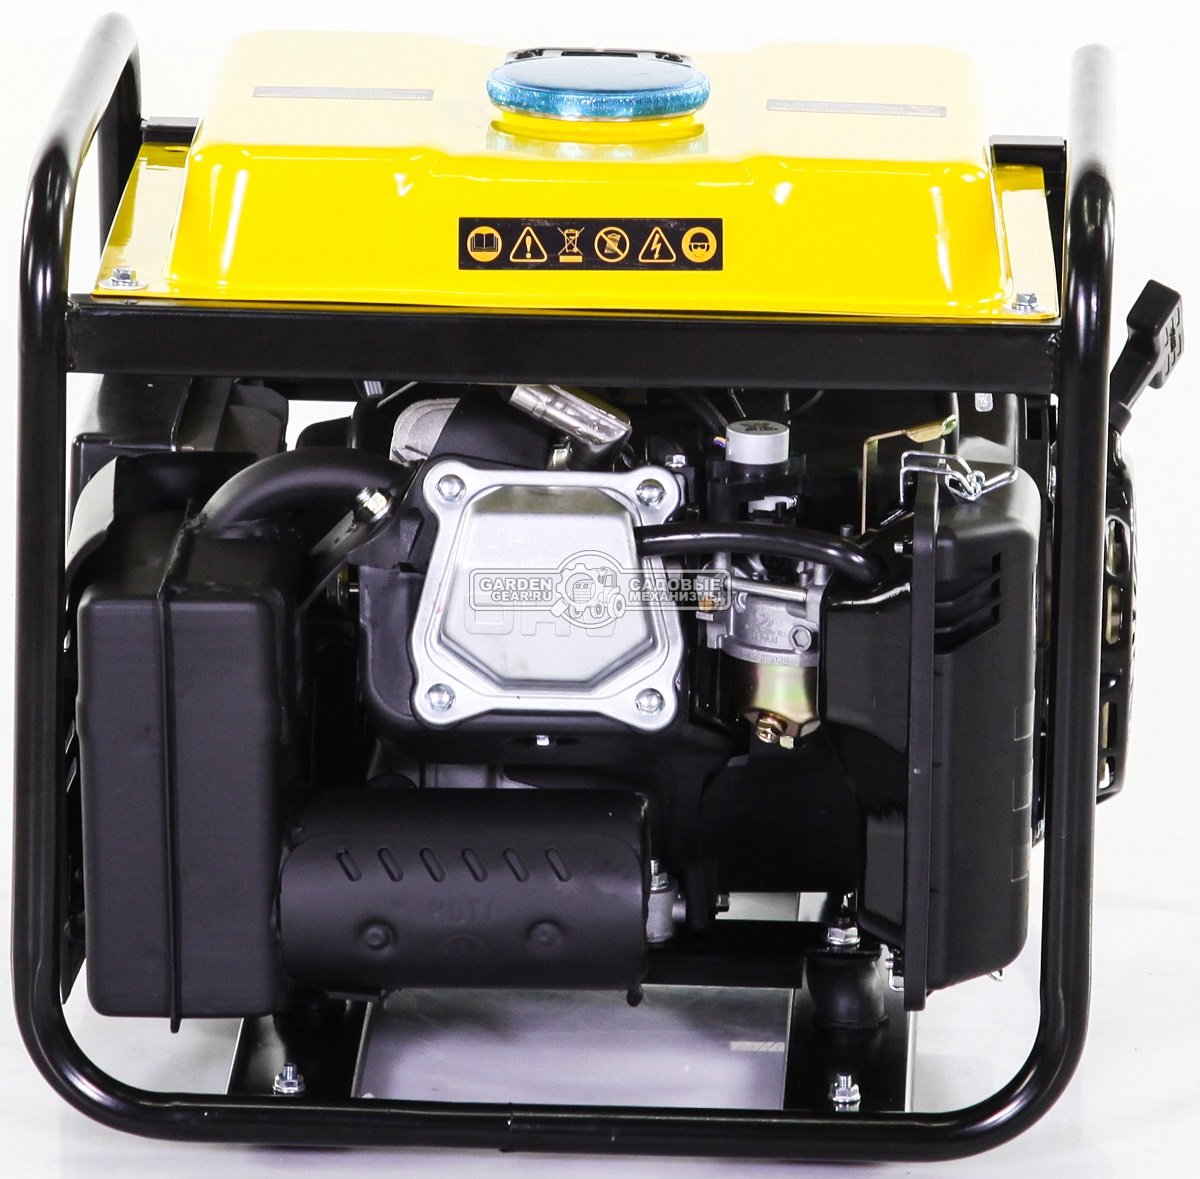 Бензиновый генератор инверторный Champion IGG3200 (PRC, Champion, 212 см3/7.0 л.с., 3.2/3.5 кВт, 5.7 л, 26 кг)